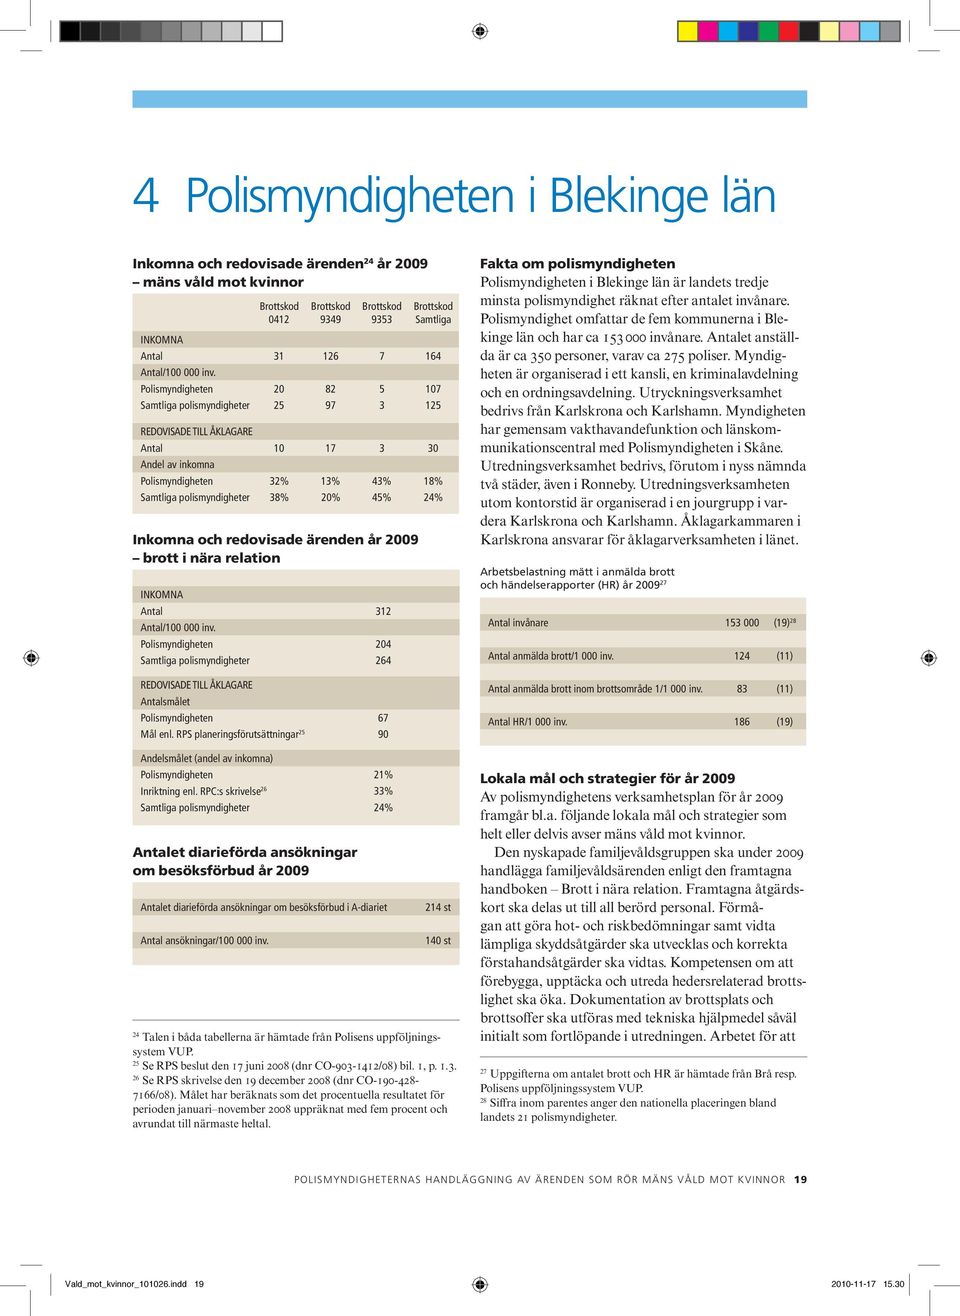 Polismyndigheten 20 82 5 107 Samtliga polismyndigheter 25 97 3 125 REDOVISADE TILL ÅKLAGARE Antal 10 17 3 30 Andel av inkomna Polismyndigheten 32% 13% 43% 18% Samtliga polismyndigheter 38% 20% 45%